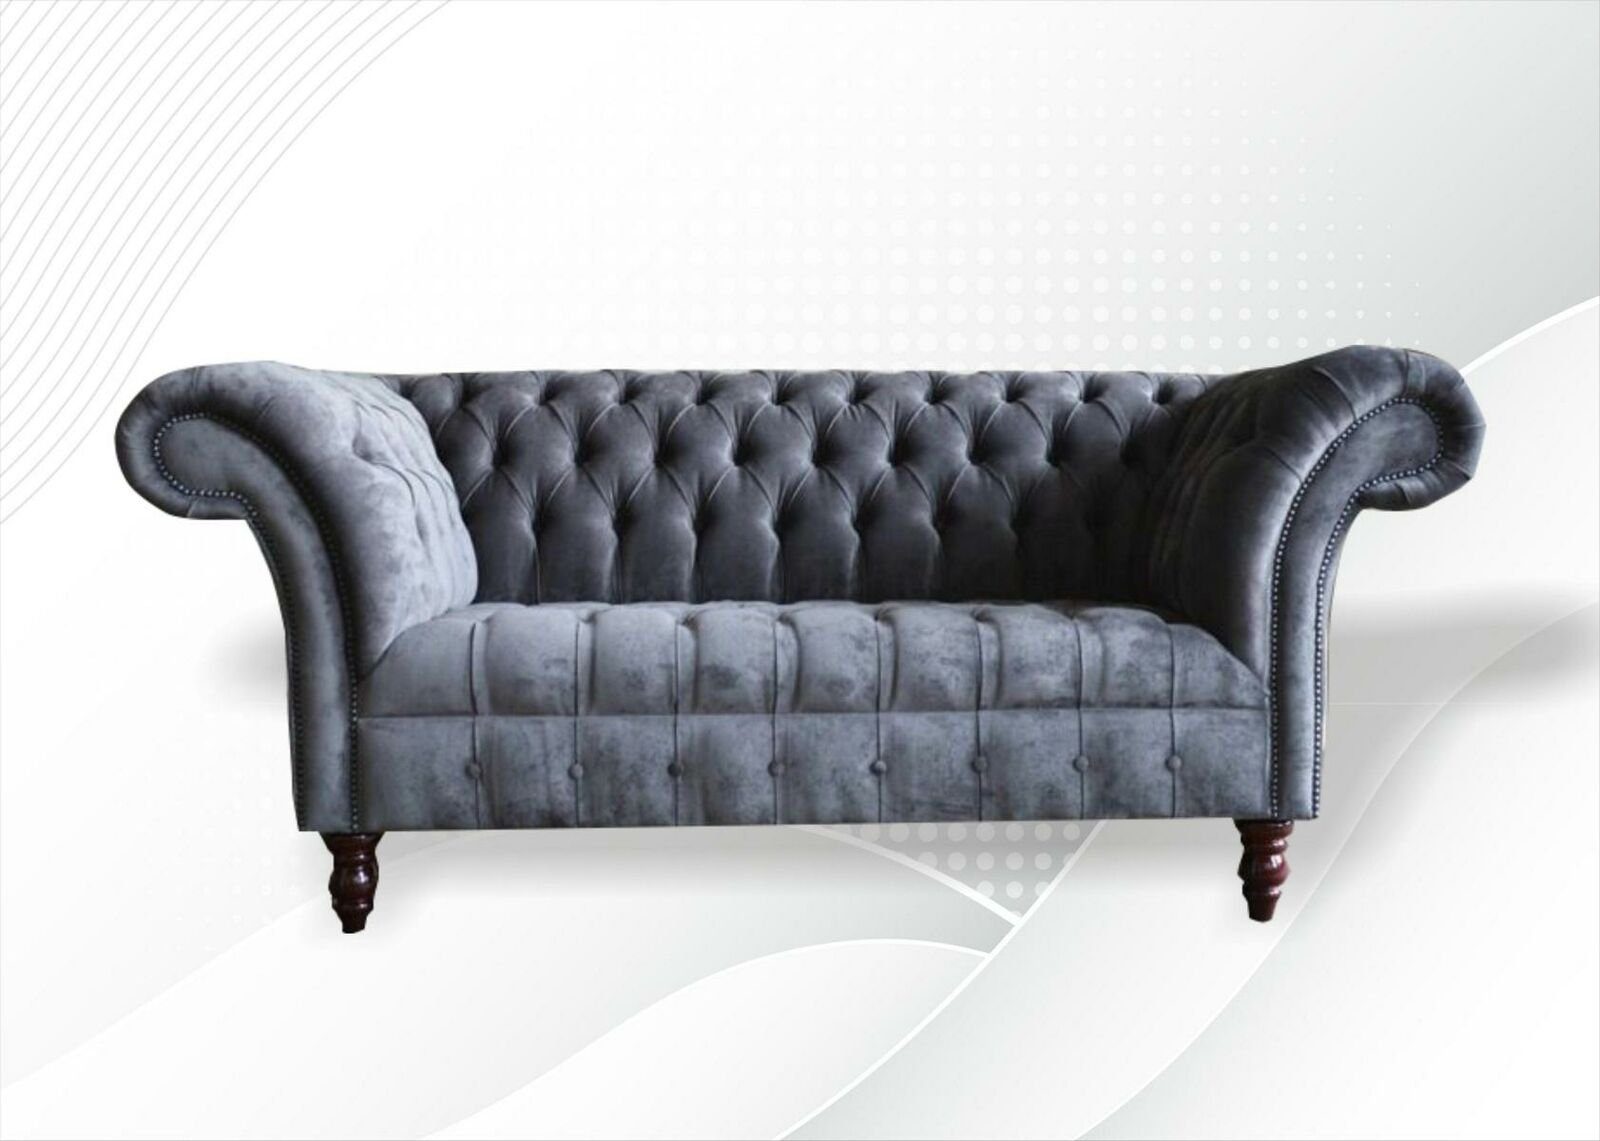 JVmoebel 2 grauer Chesterfield Neu, Chesterfield-Sofa Made Sitzer in Wohnzimmermöbel Luxus Europe